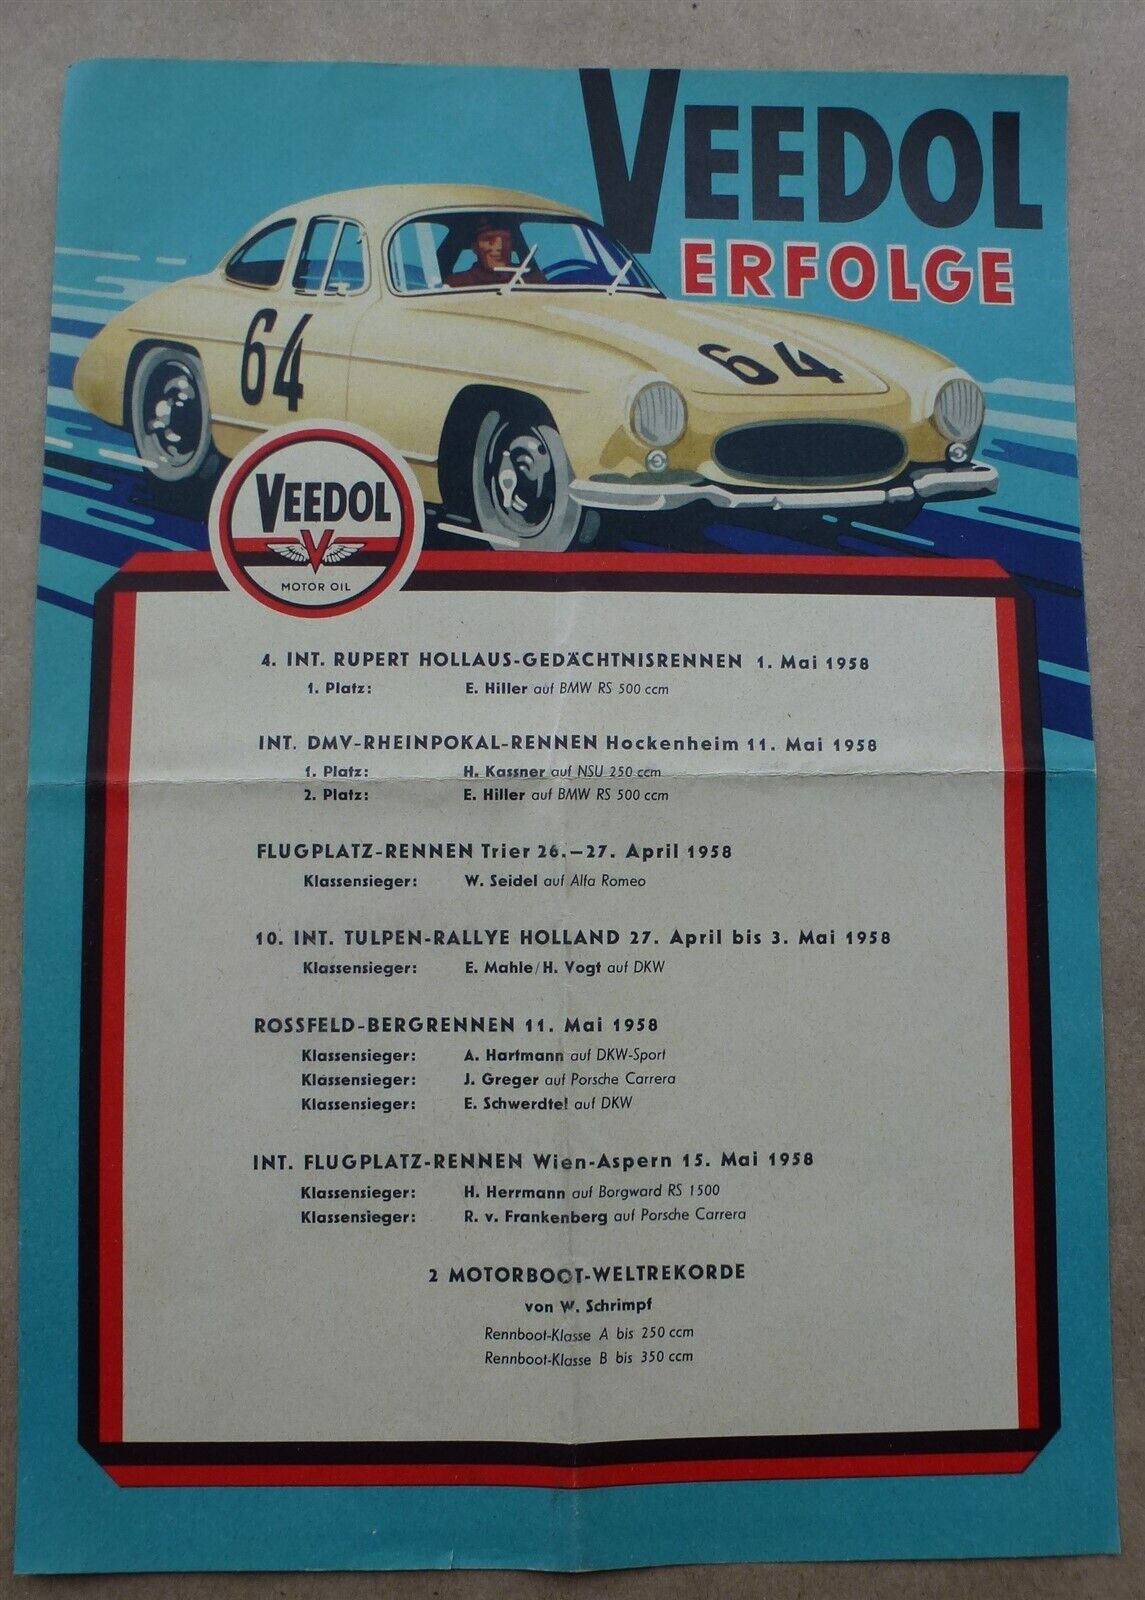 Poster Veedol 1958 Motor Oil Erfolge Successes flyer Mercedes illustration A